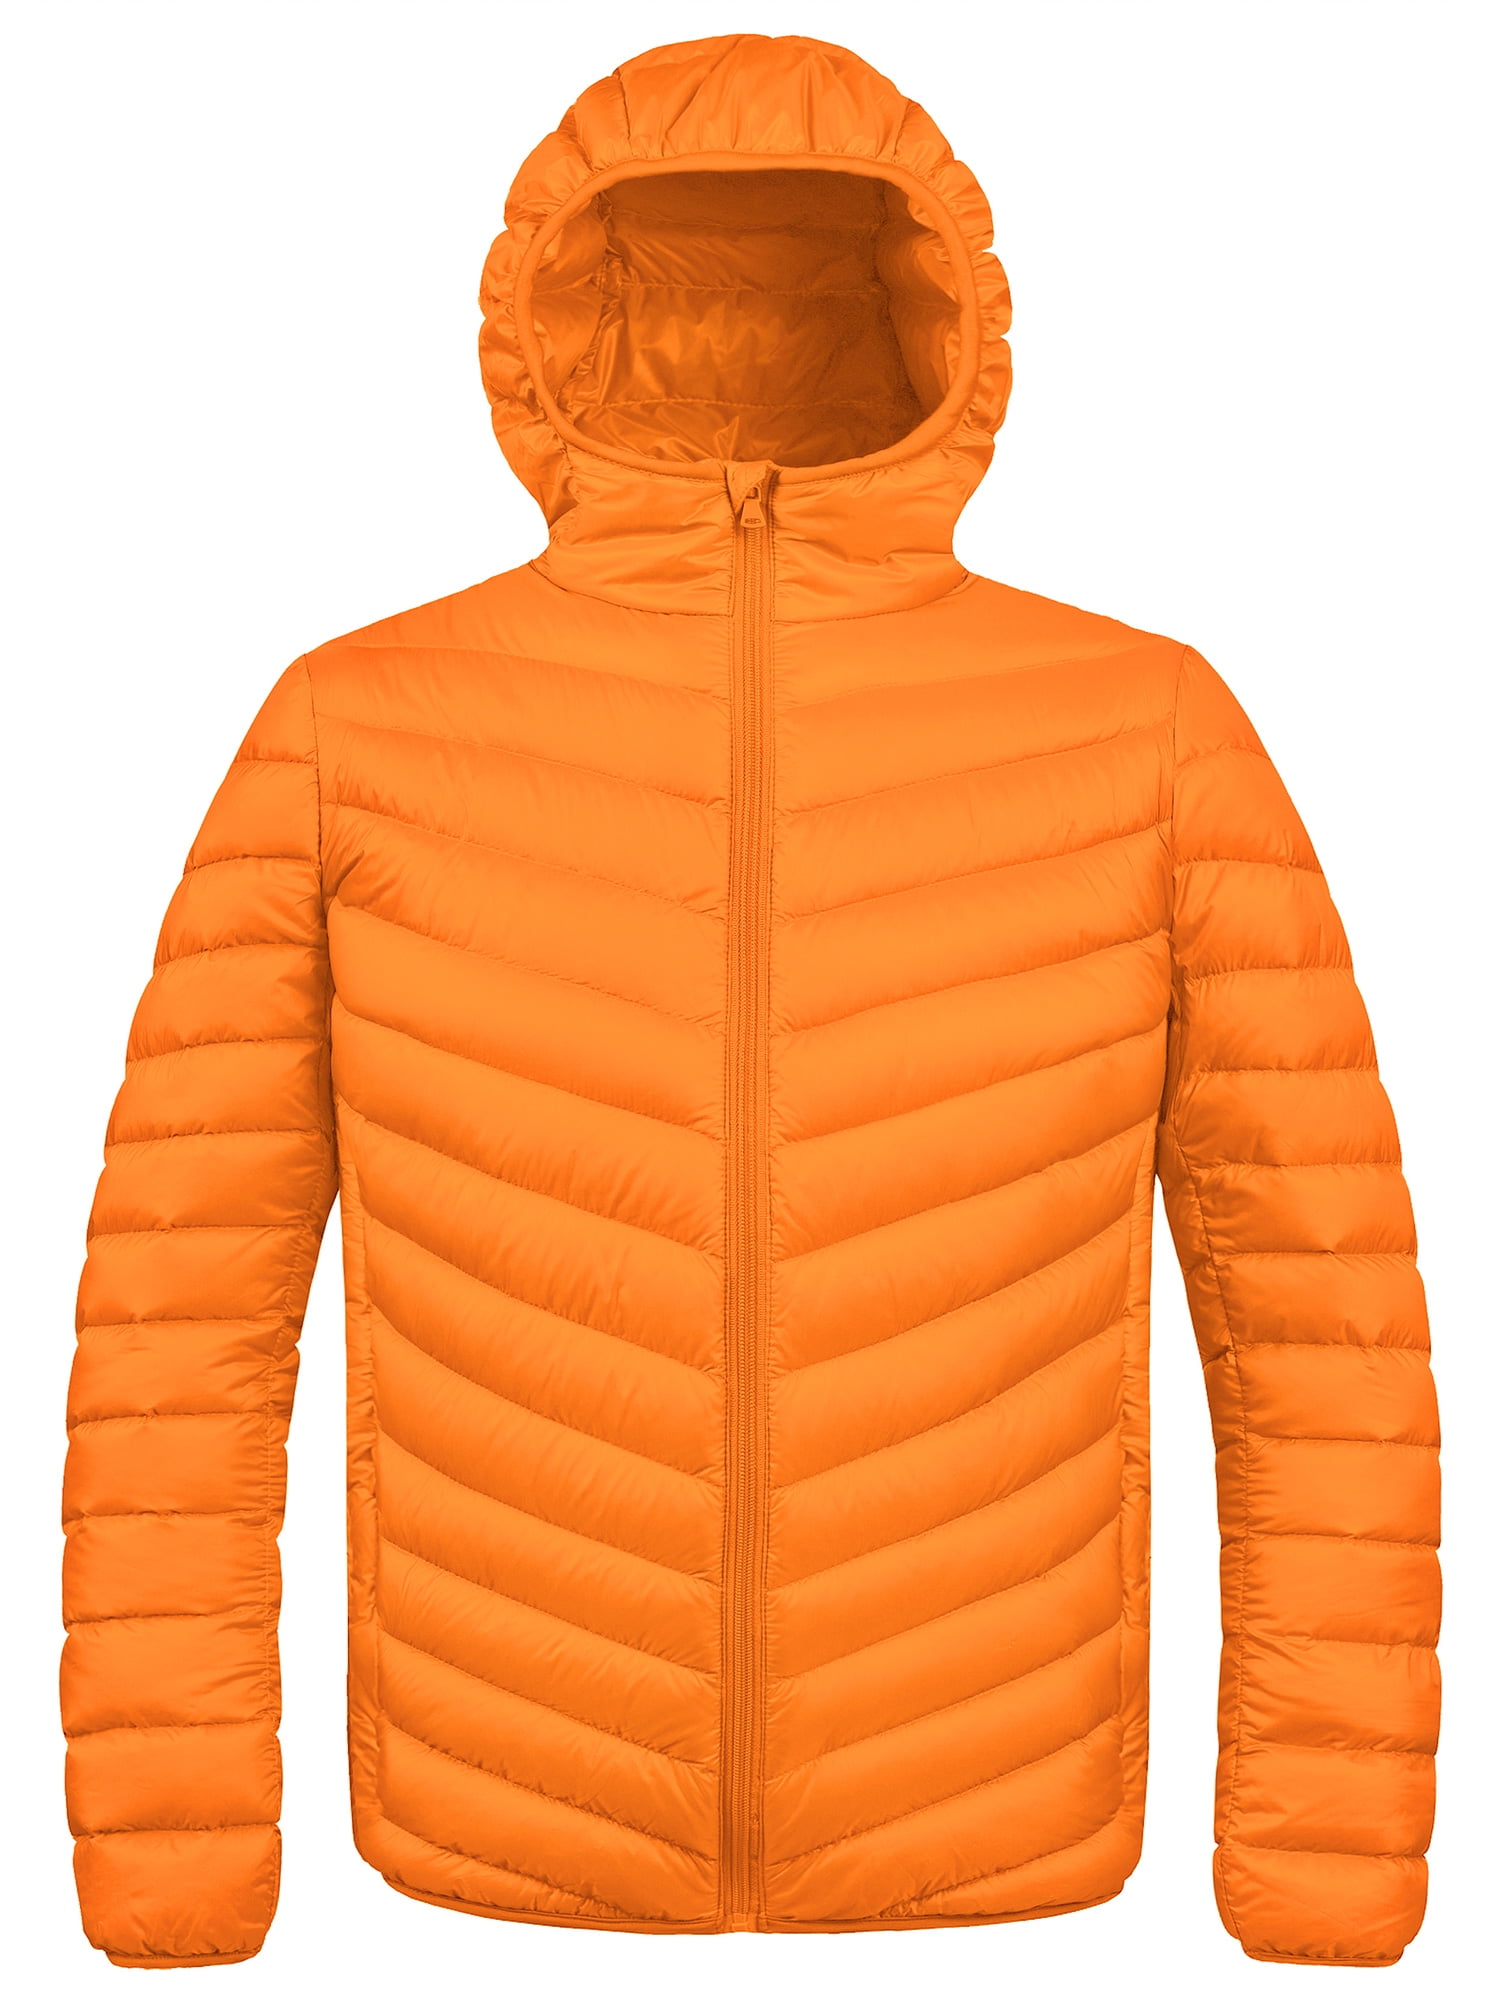 ZSHOW Men's Puffer Coat Lightweight Down Jacket Windproof Puffer Jacket  Warm Windbreaker Orange S